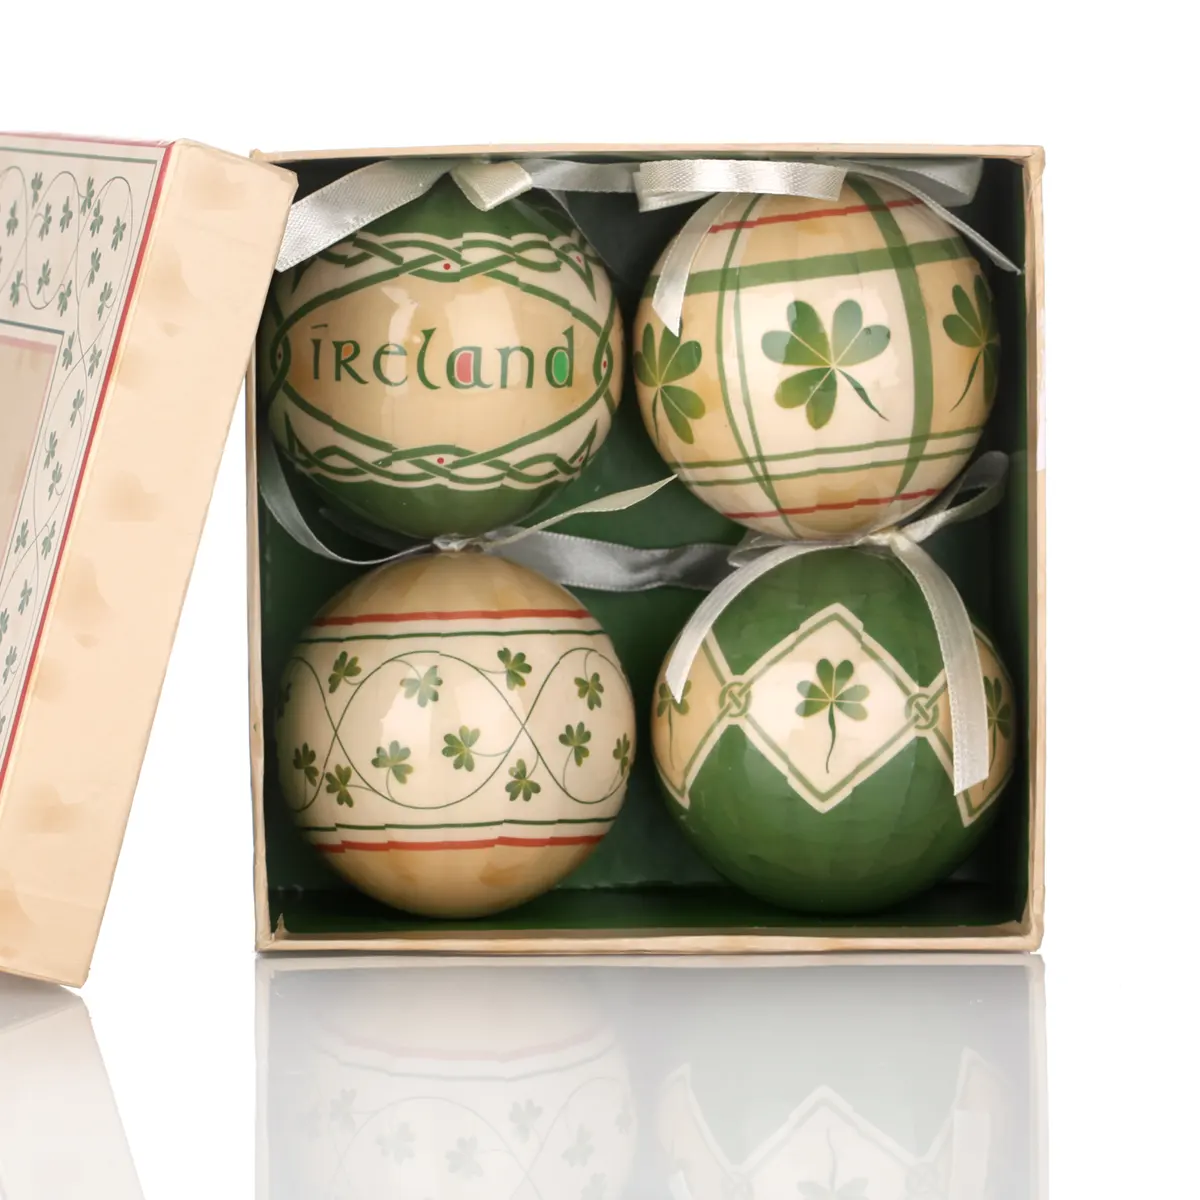 Irish Shamrock - 4 Traditionelle Weihnachtskugeln aus Irland im Kleeblatt-Design